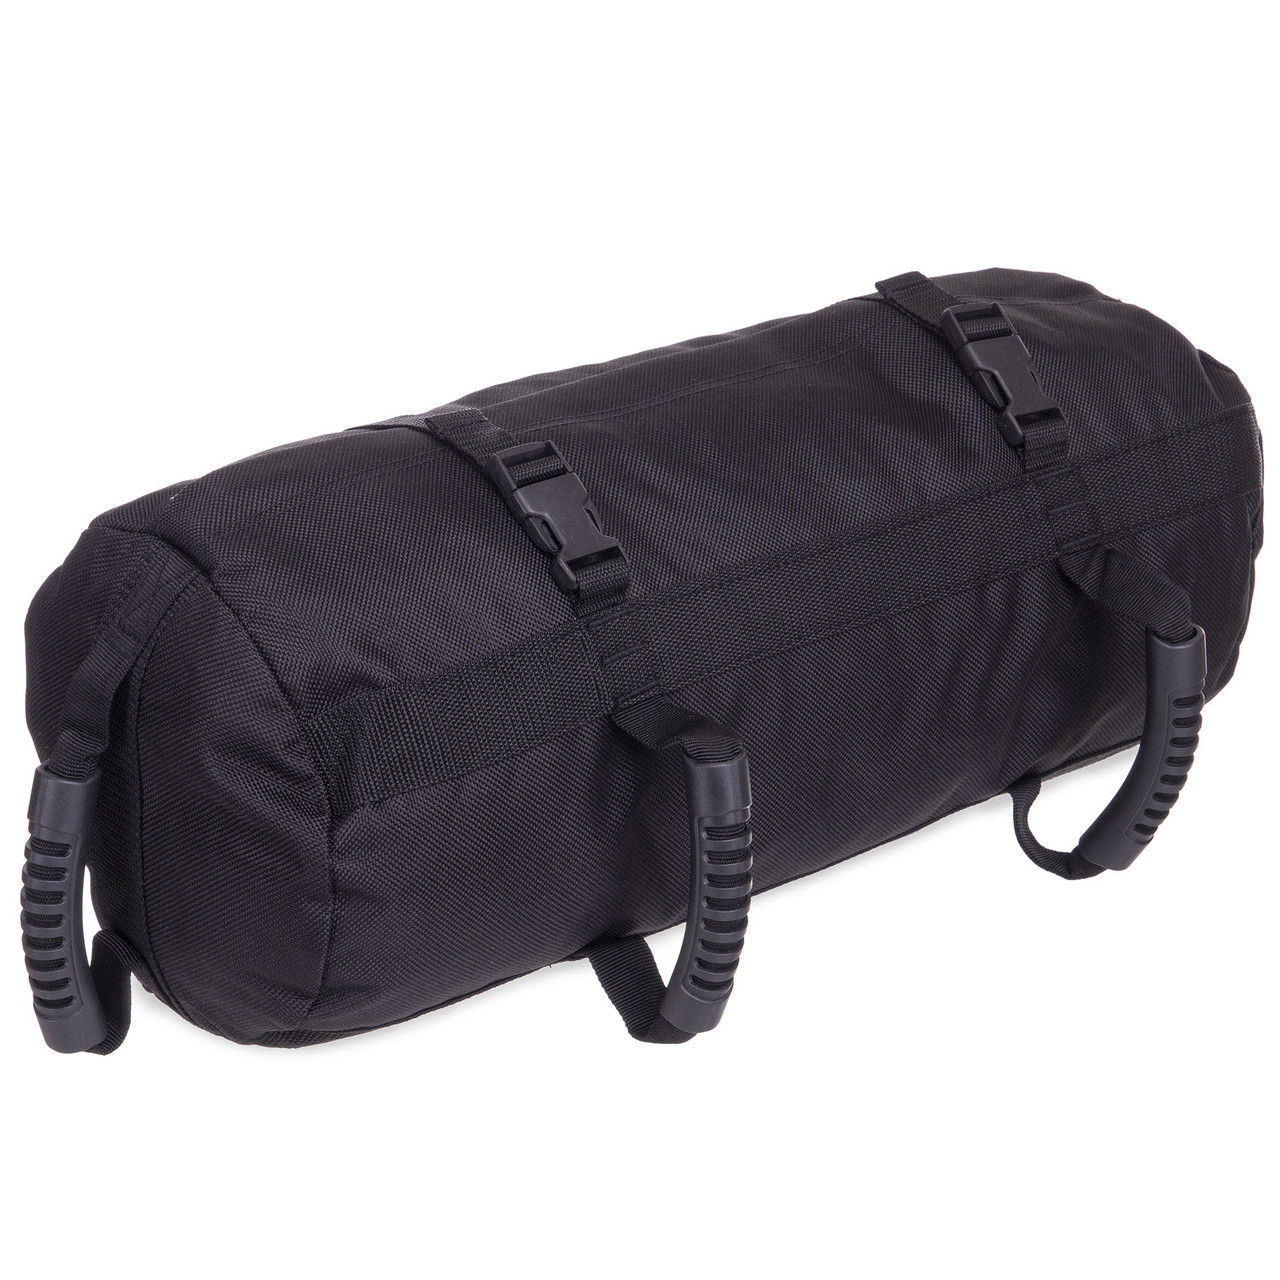 Сумка для кроссфита Sandbag FI-6232-1 40LB (PU, вага до 18 кг, 4 філера для піску, чорний)